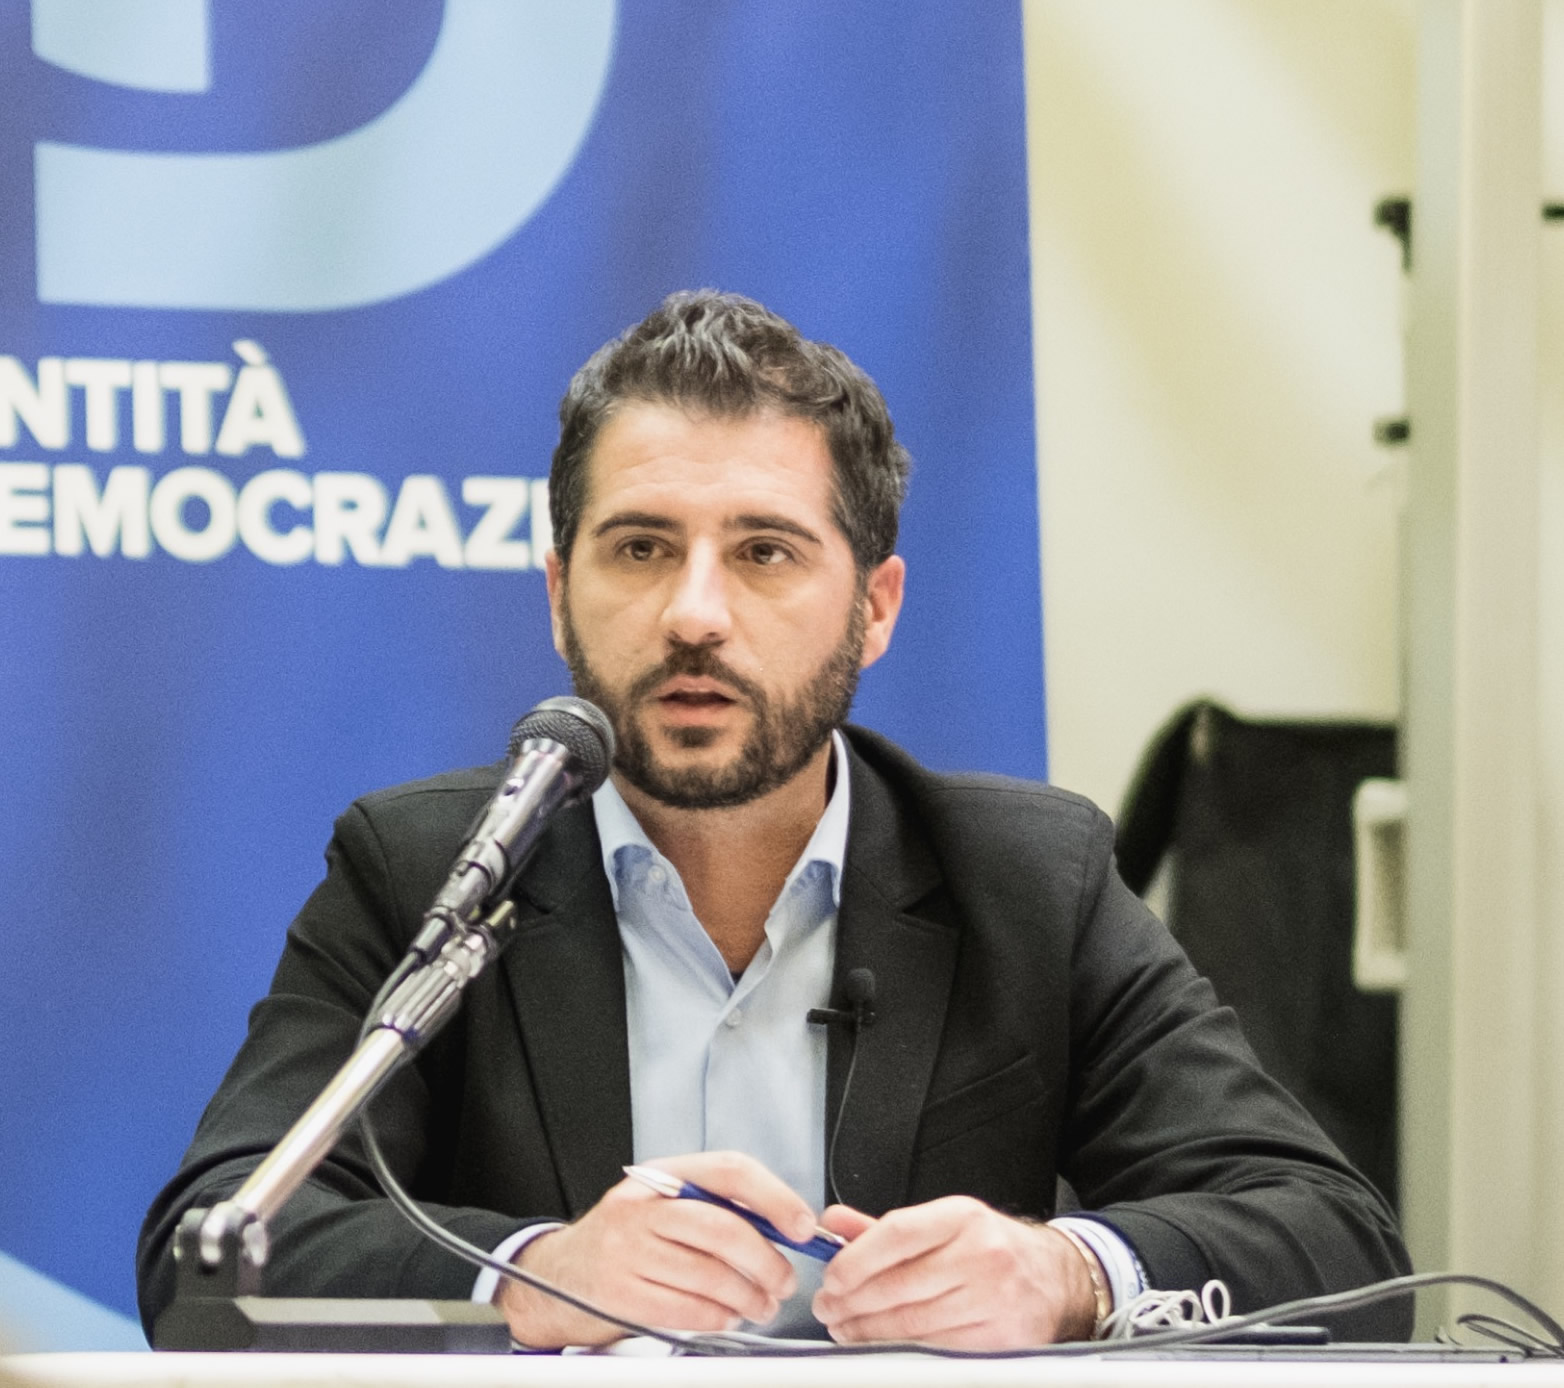 Paolo Borchia, eurodeputato Lega di maio